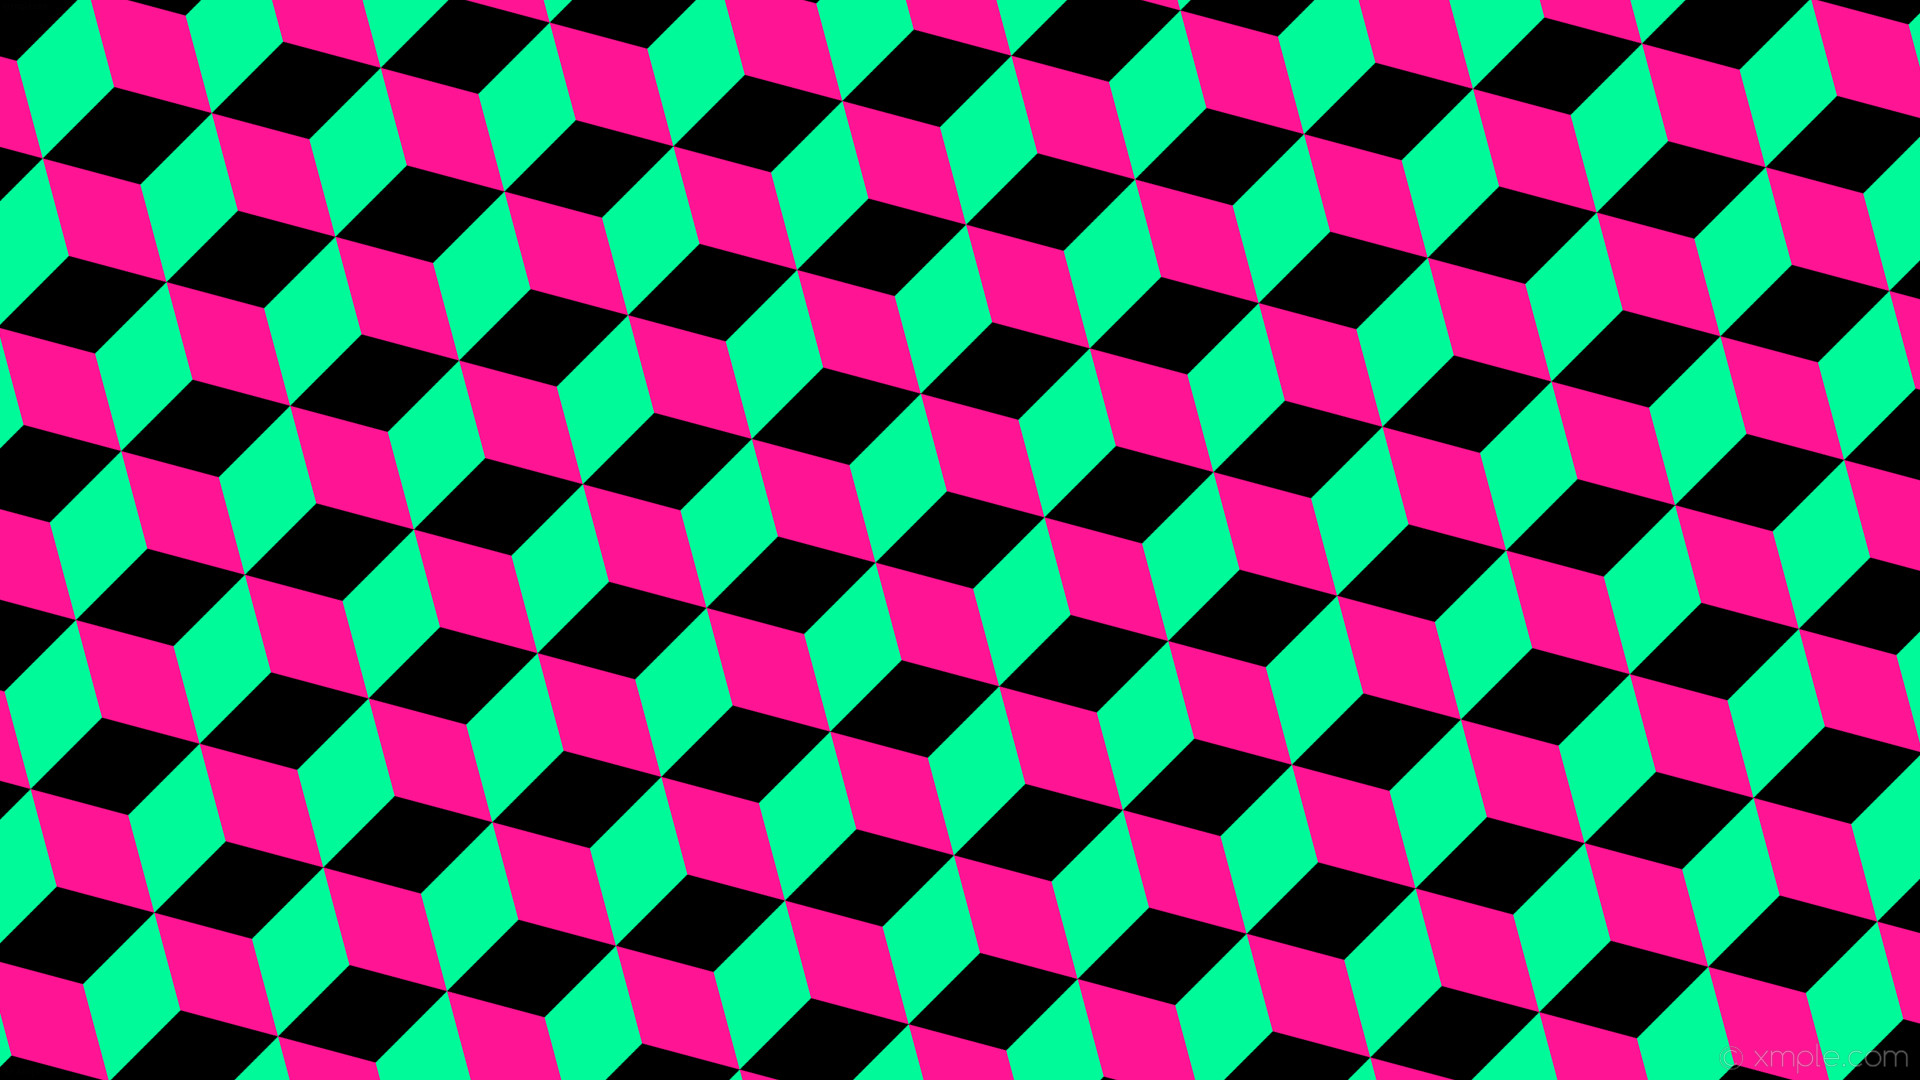 1920x1080 wallpaper green pink 3d cubes black deep pink medium spring green #000000  #ff1493 #